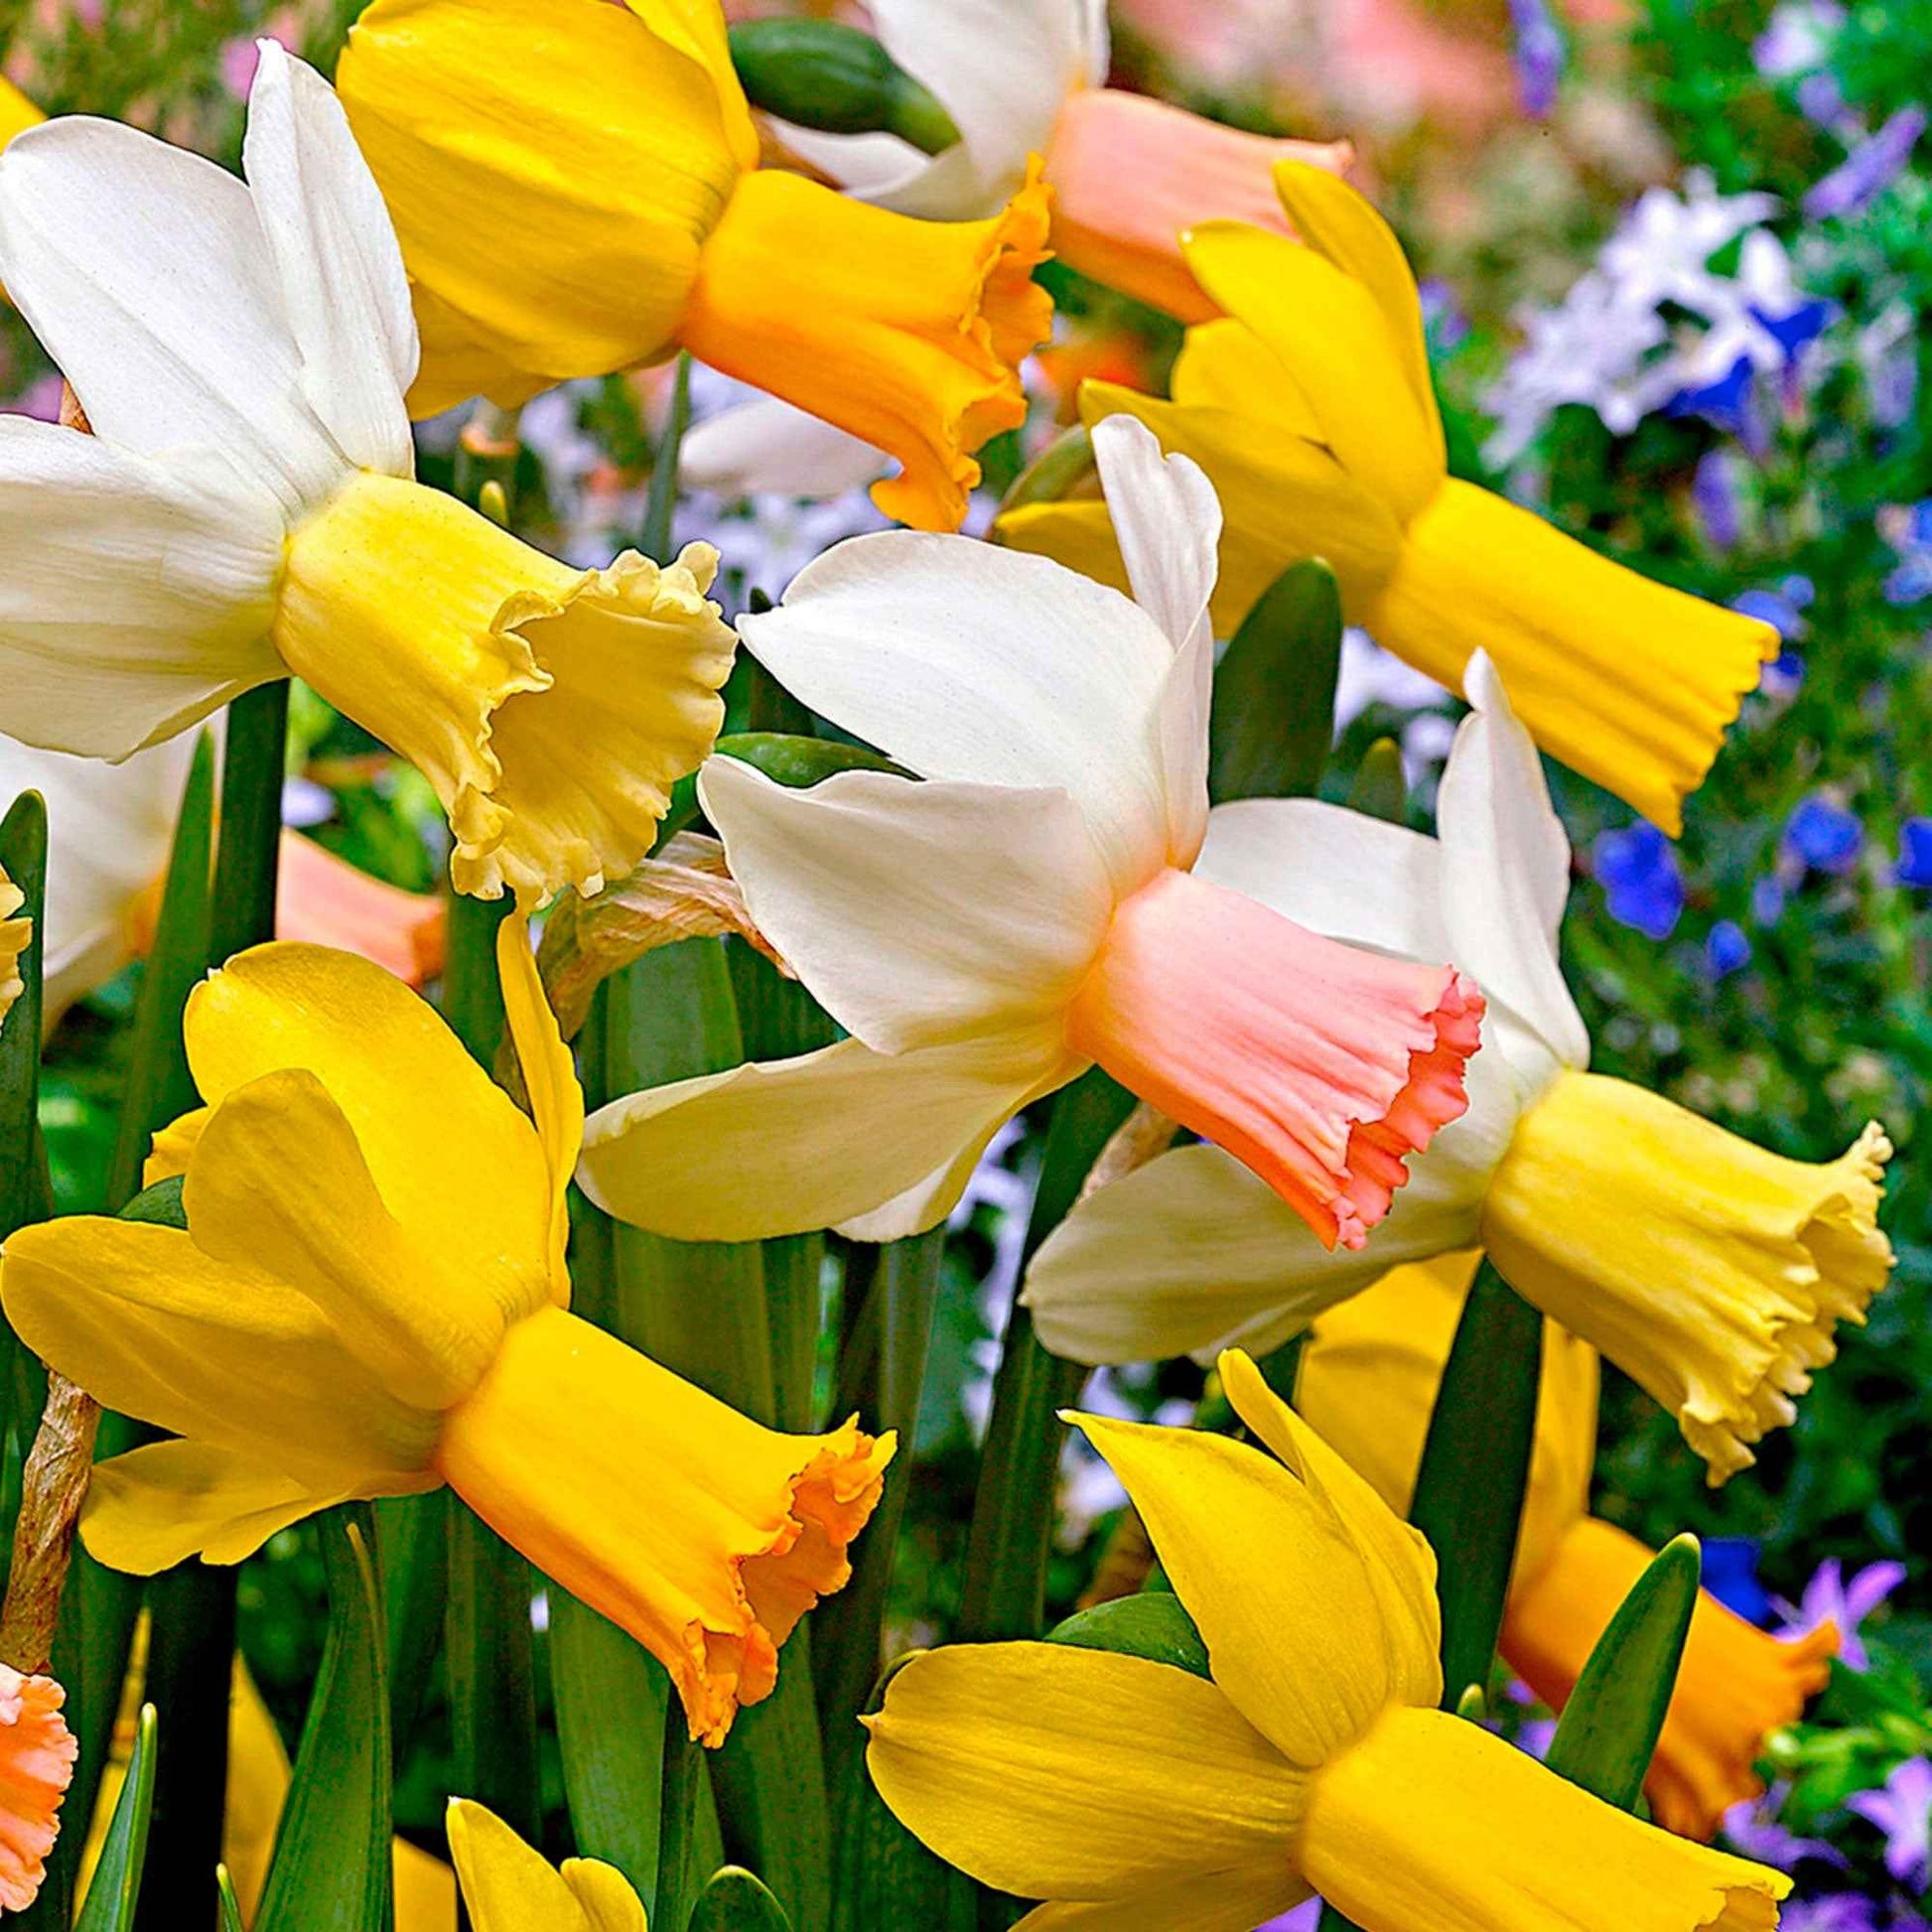 25x Narzisse Narcissus - Mischung Dwarf biologisch gelb-weiβ - Alle beliebten Blumenzwiebeln